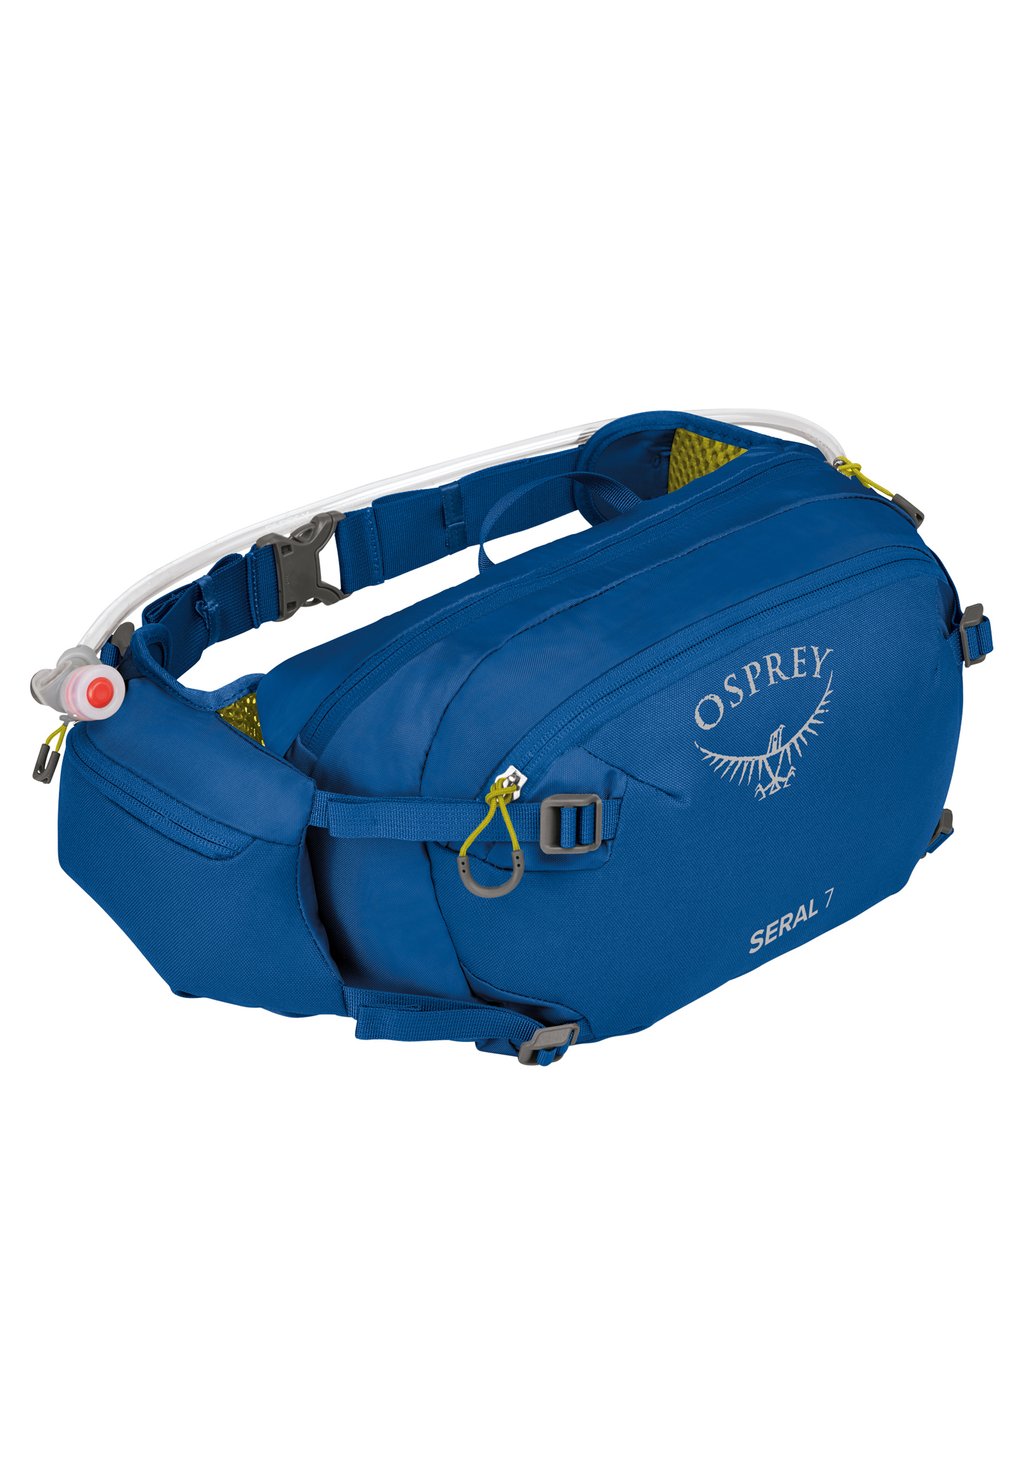 Поясная сумка SERAL 7 Osprey, цвет postal blue